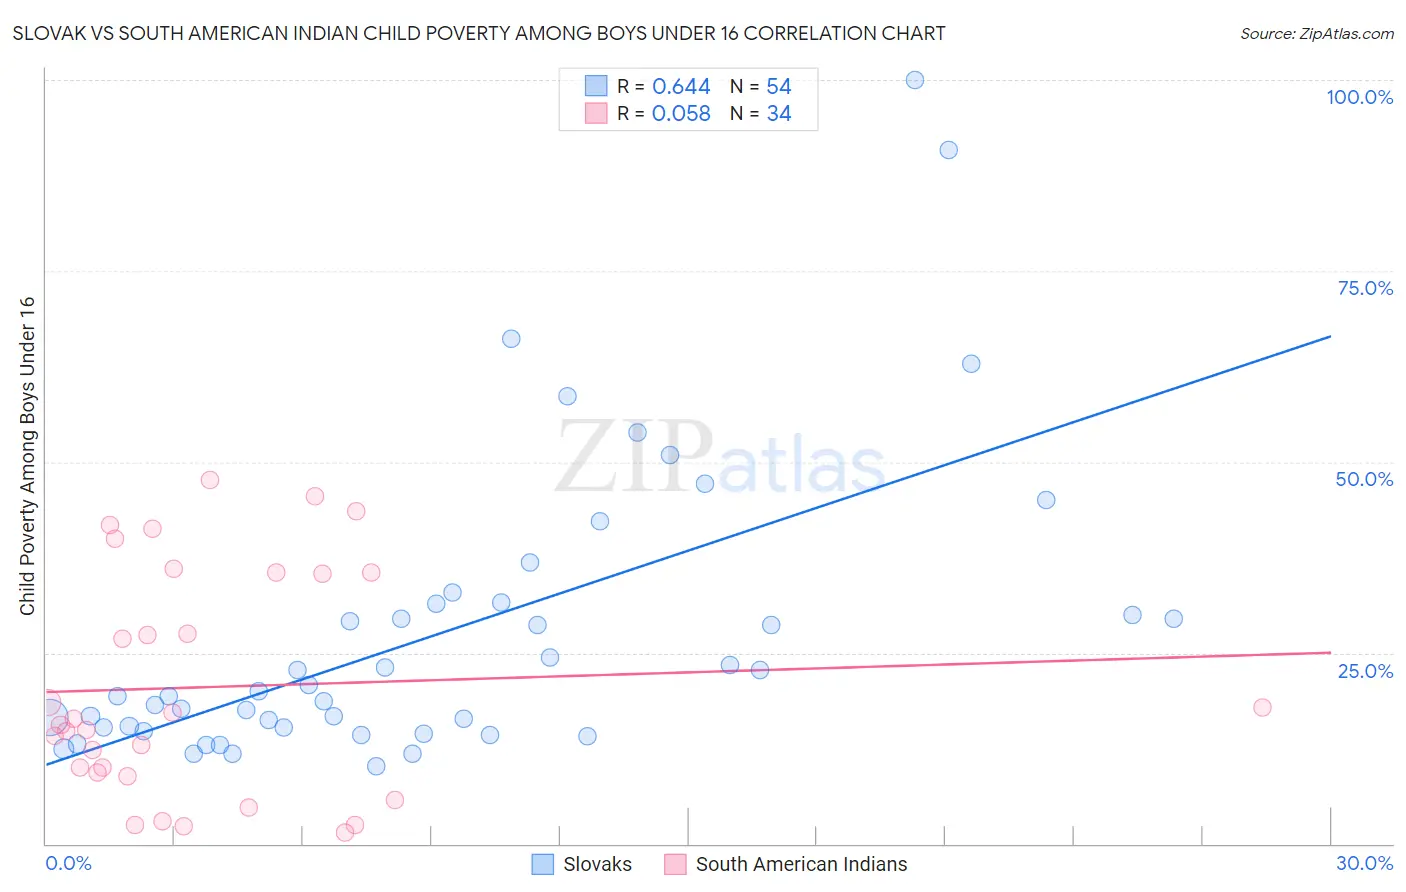 Slovak vs South American Indian Child Poverty Among Boys Under 16